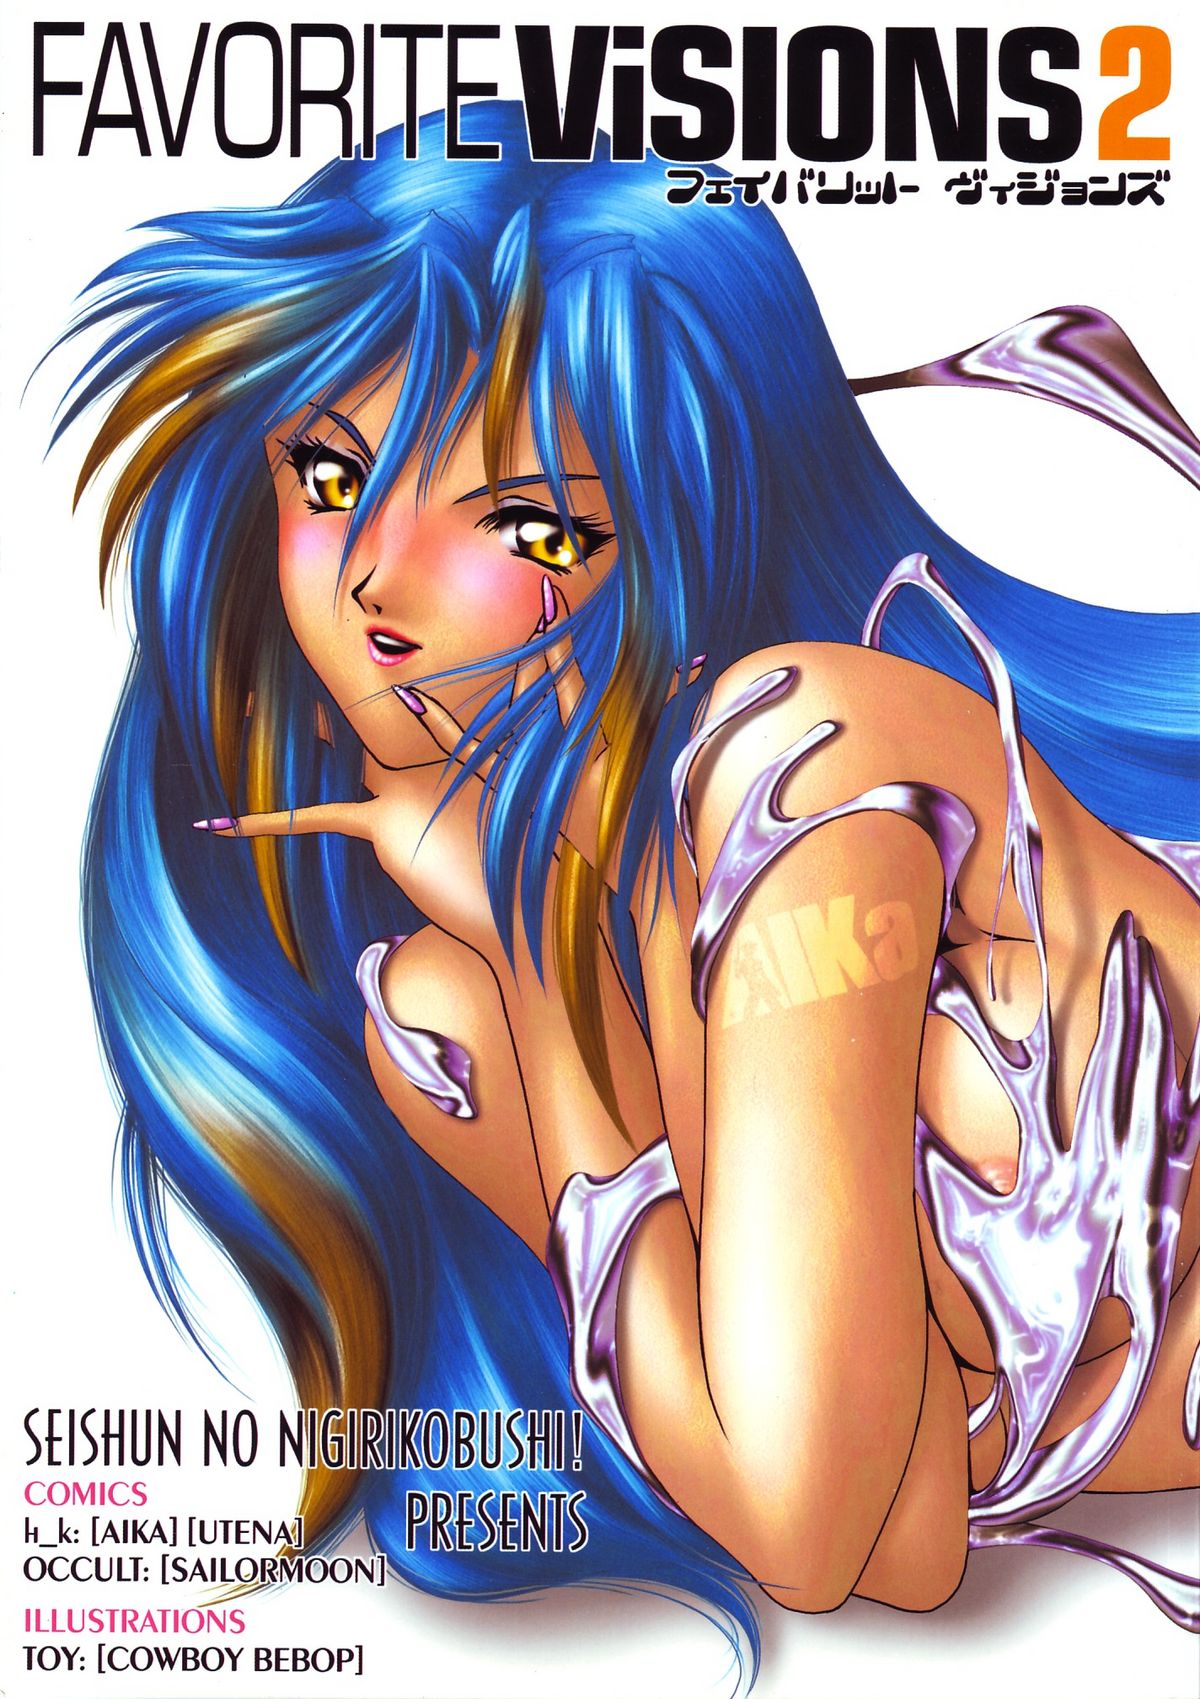 [Seishun No Nigirikobushi!] Favorite Visions 2 (Sailor Moon, AIKa) page 1 full